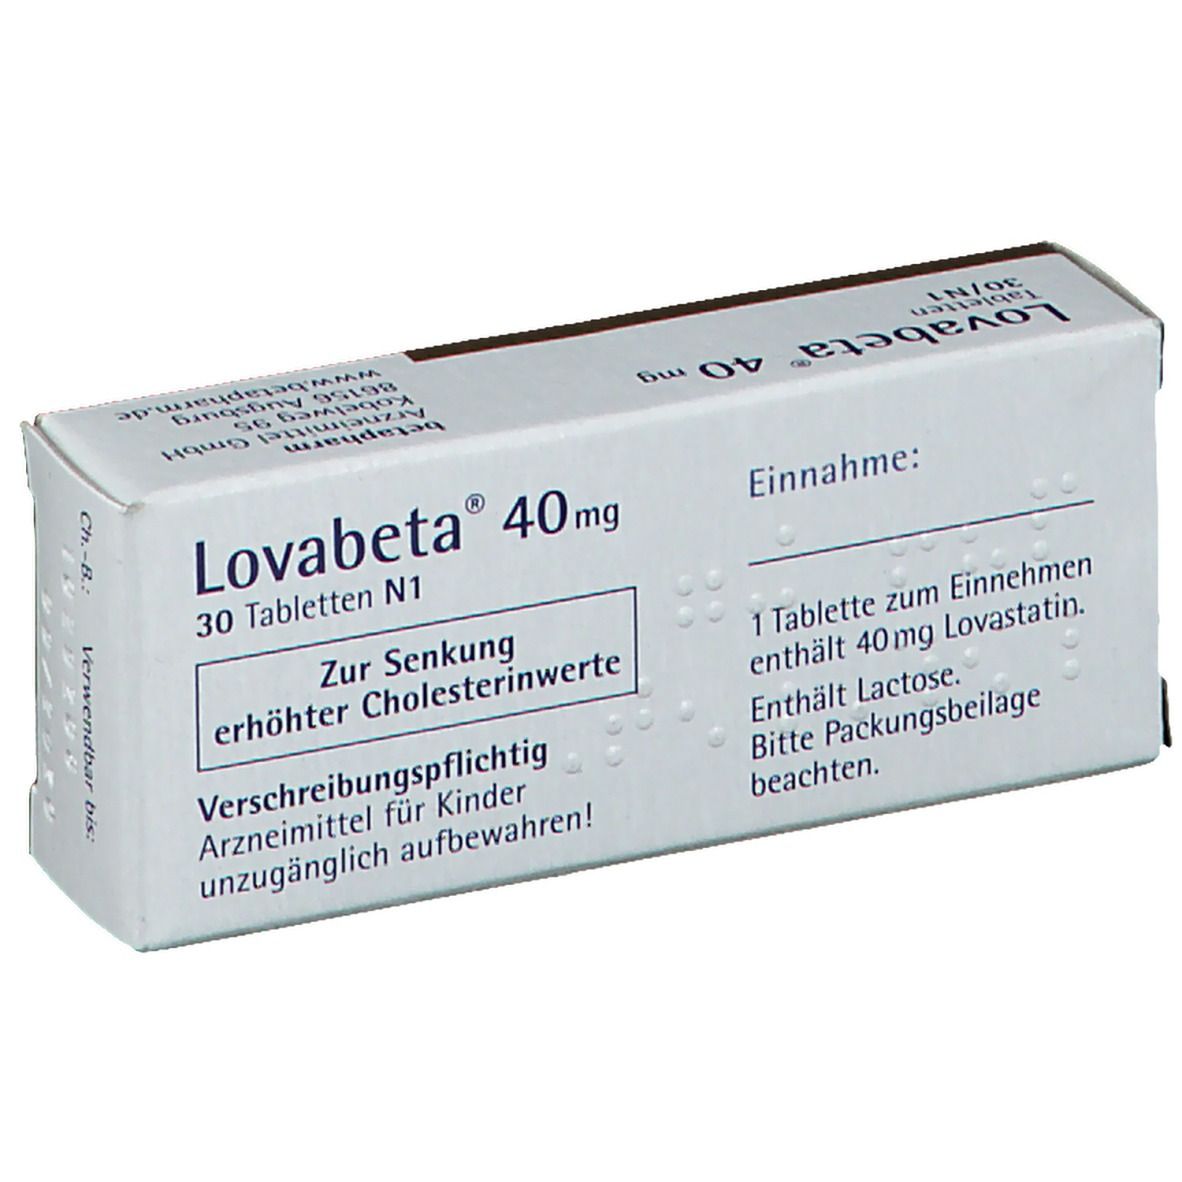 Lovabeta® 40 mg